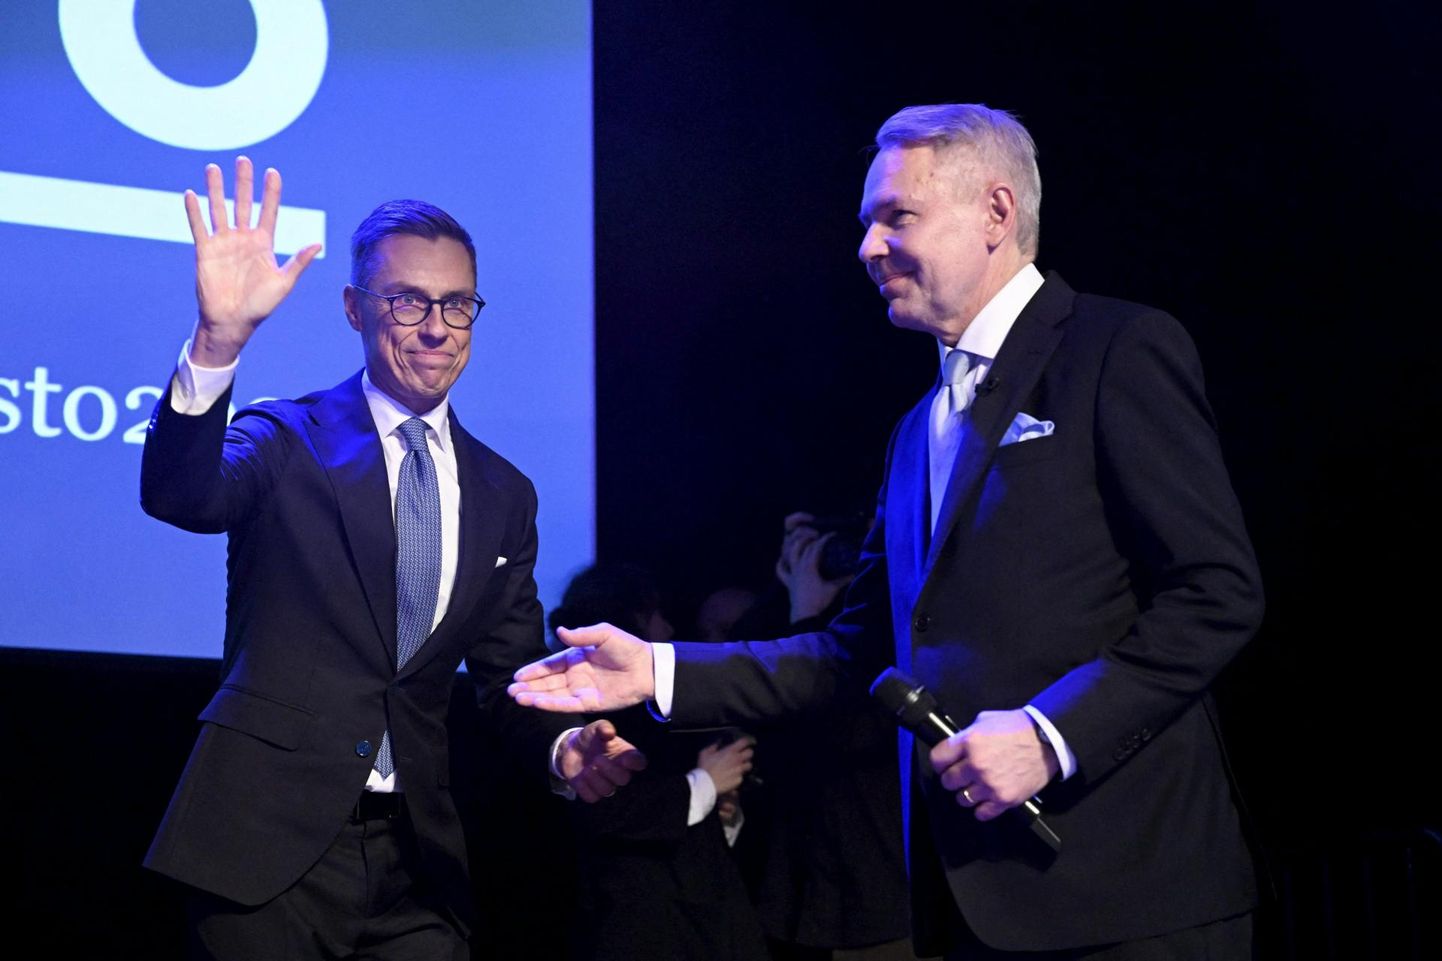 Soome presidendiks valitud Alexander Stubb (vasakul) lööb patsi kaotajaks jäänud konkurendi Pekka Haavistoga.